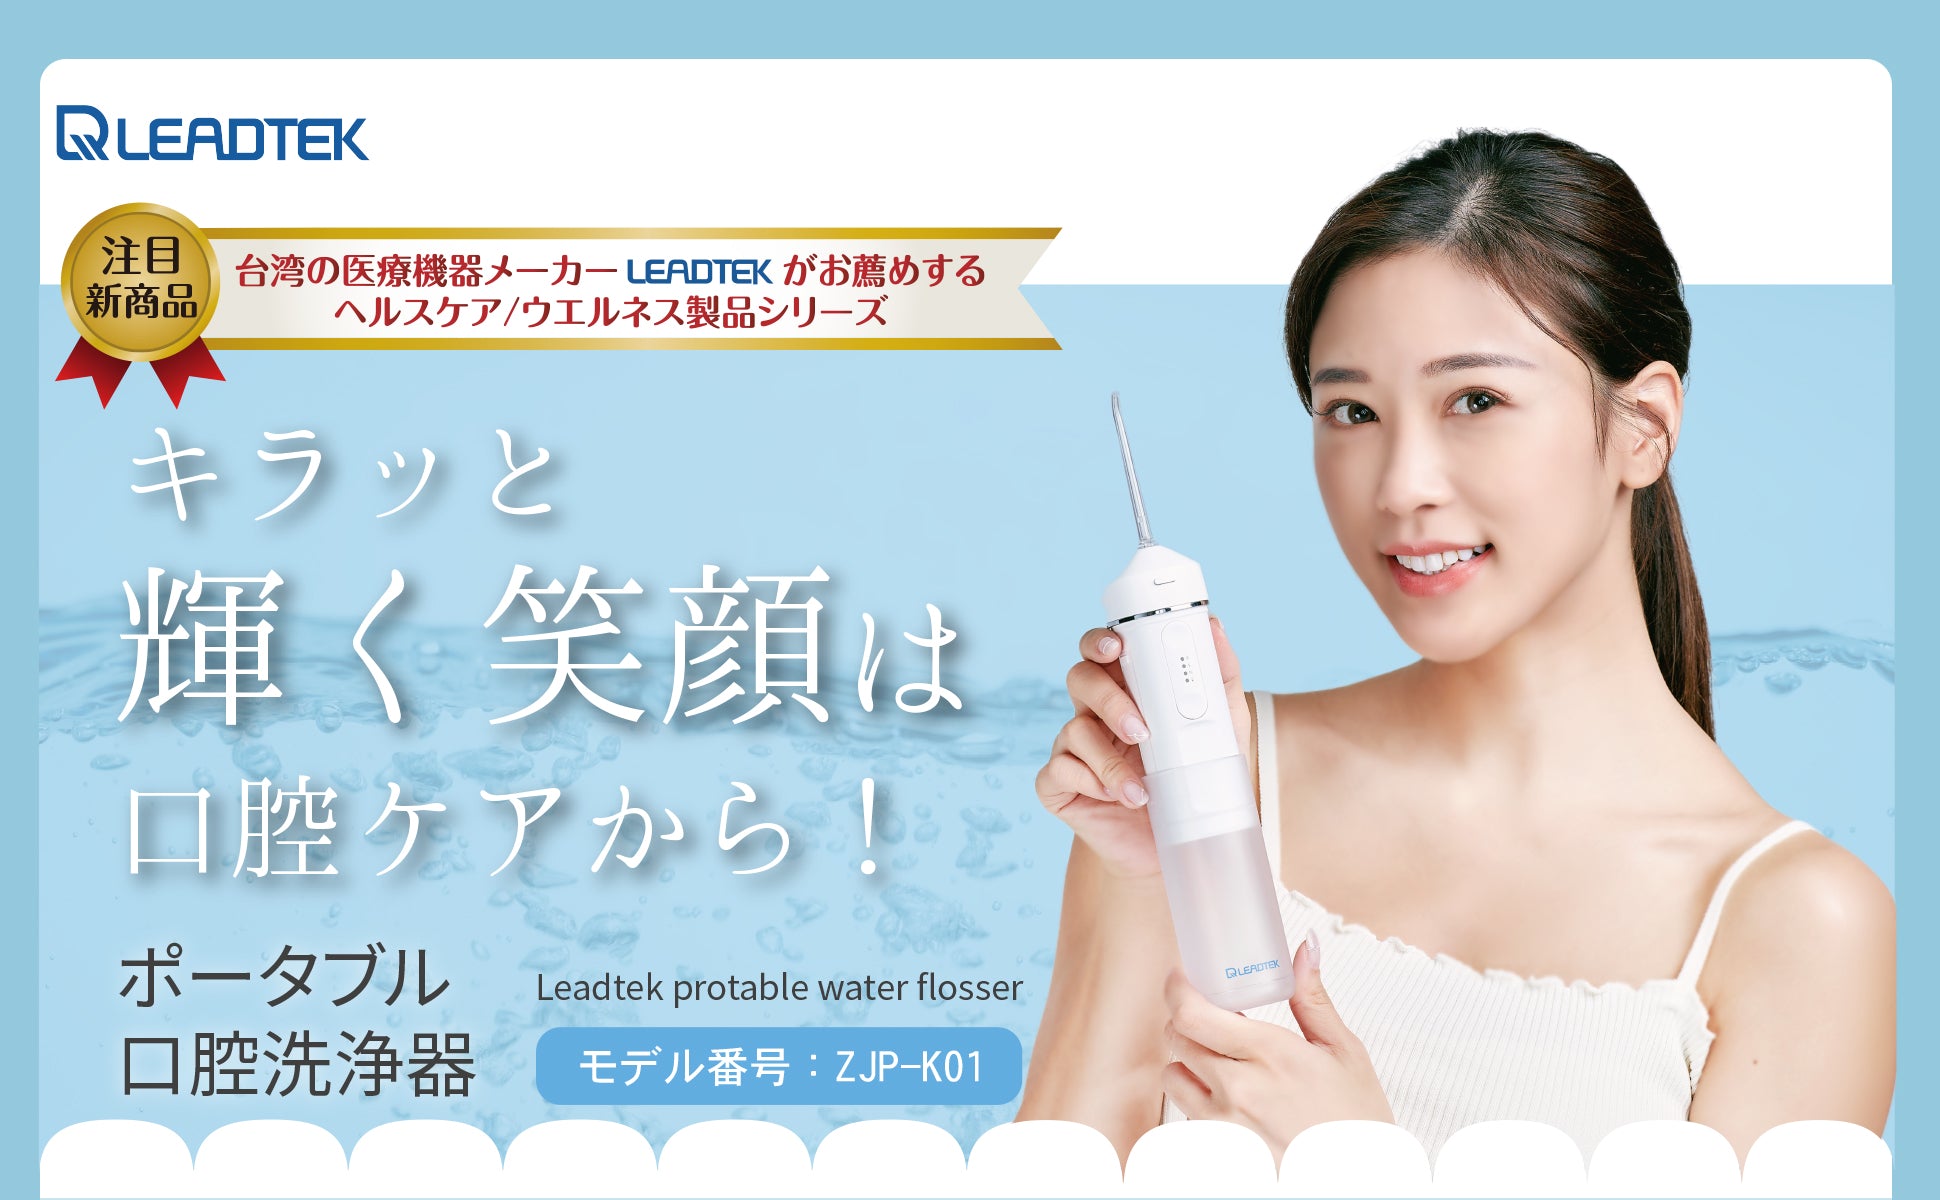 LEADTEK 日本製 ポータブル 口腔洗浄器 携帯用 超軽量